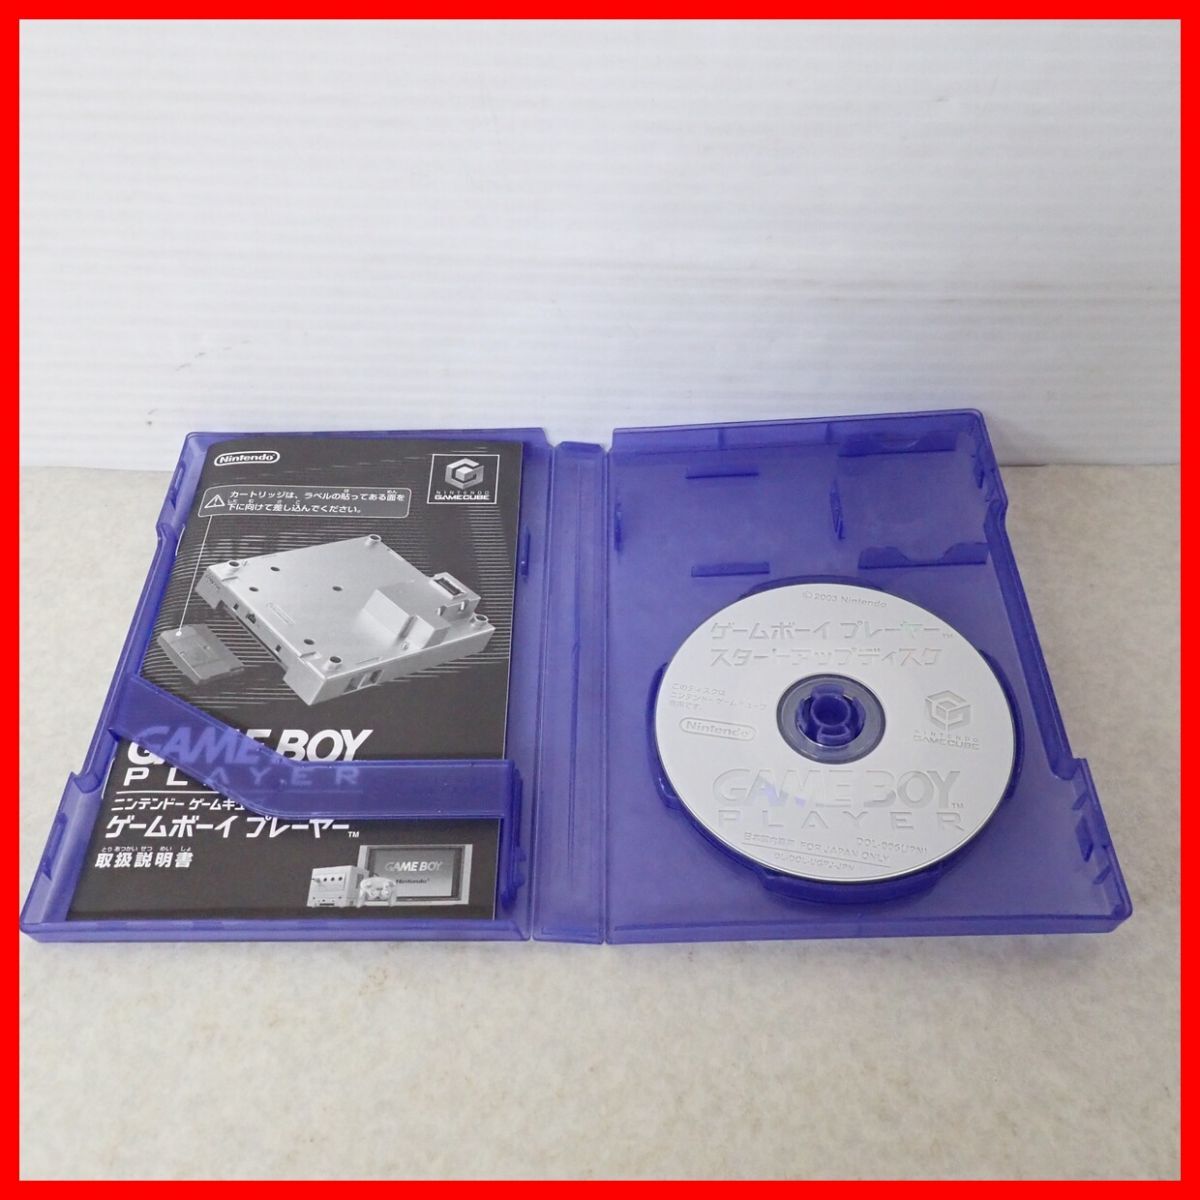 * рабочий товар GC Game Cube Game Boy плеер violet корпус + старт выше диск комплект GAME BOY PLAYER nintendo [10